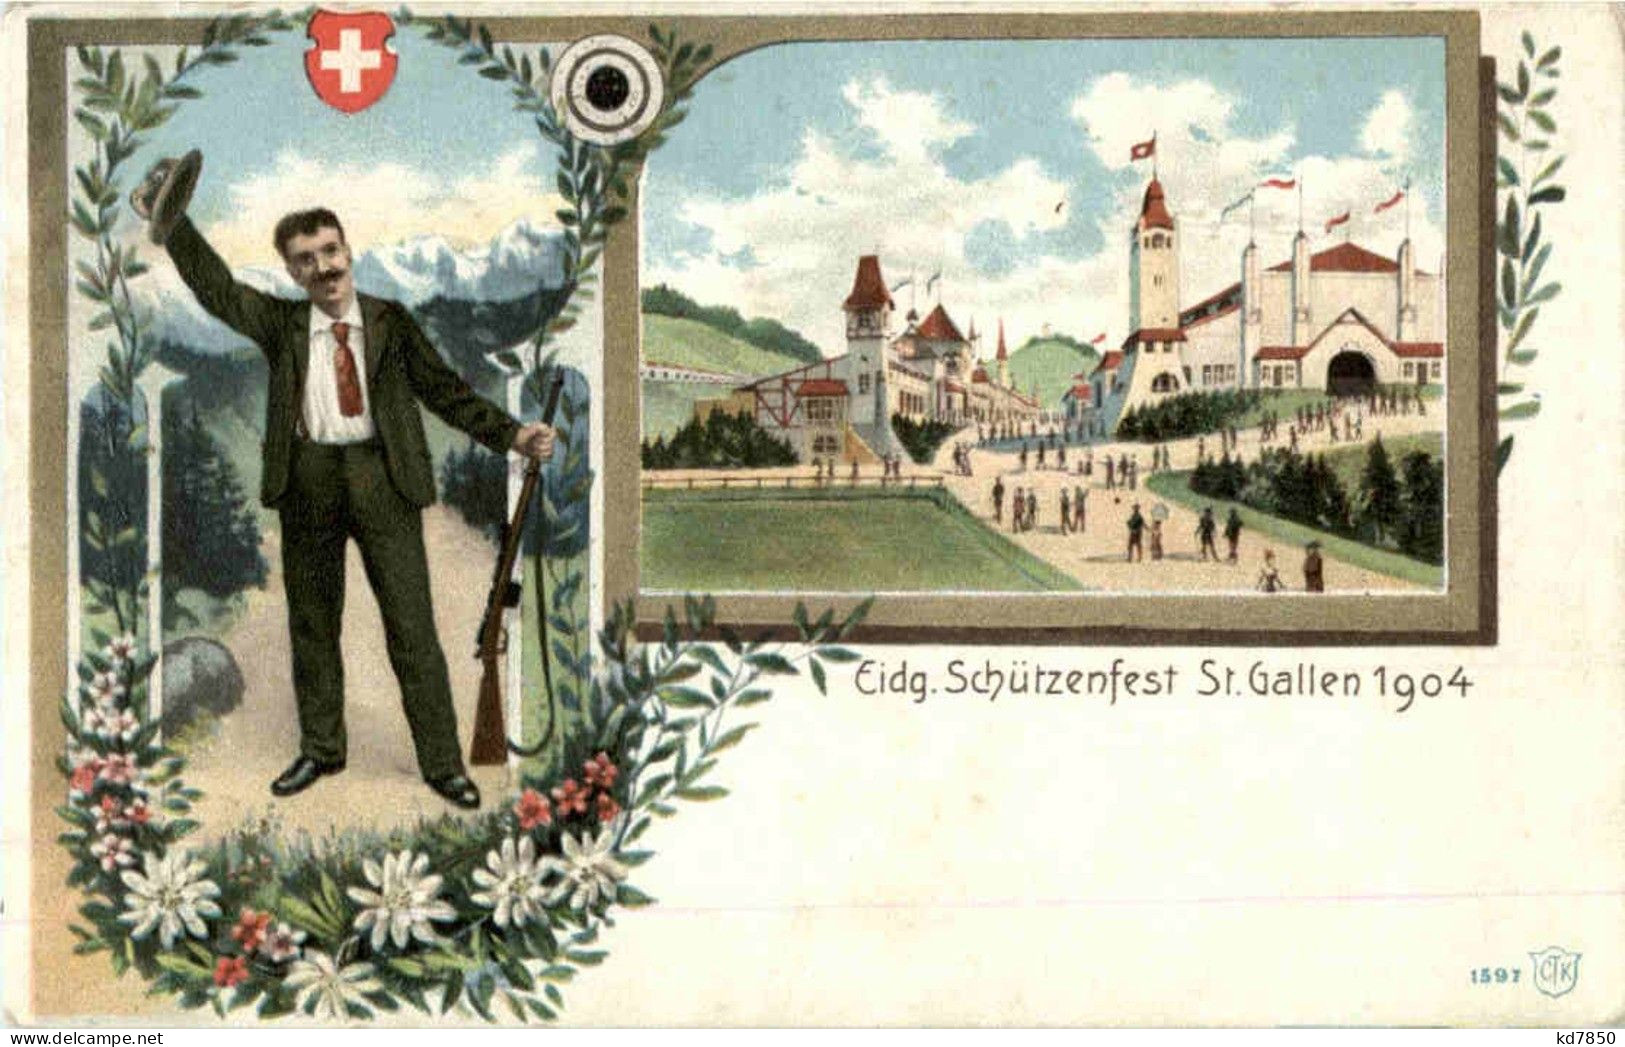 St. Gallen - Eidgen. Schützenfest 1904 - St. Gallen